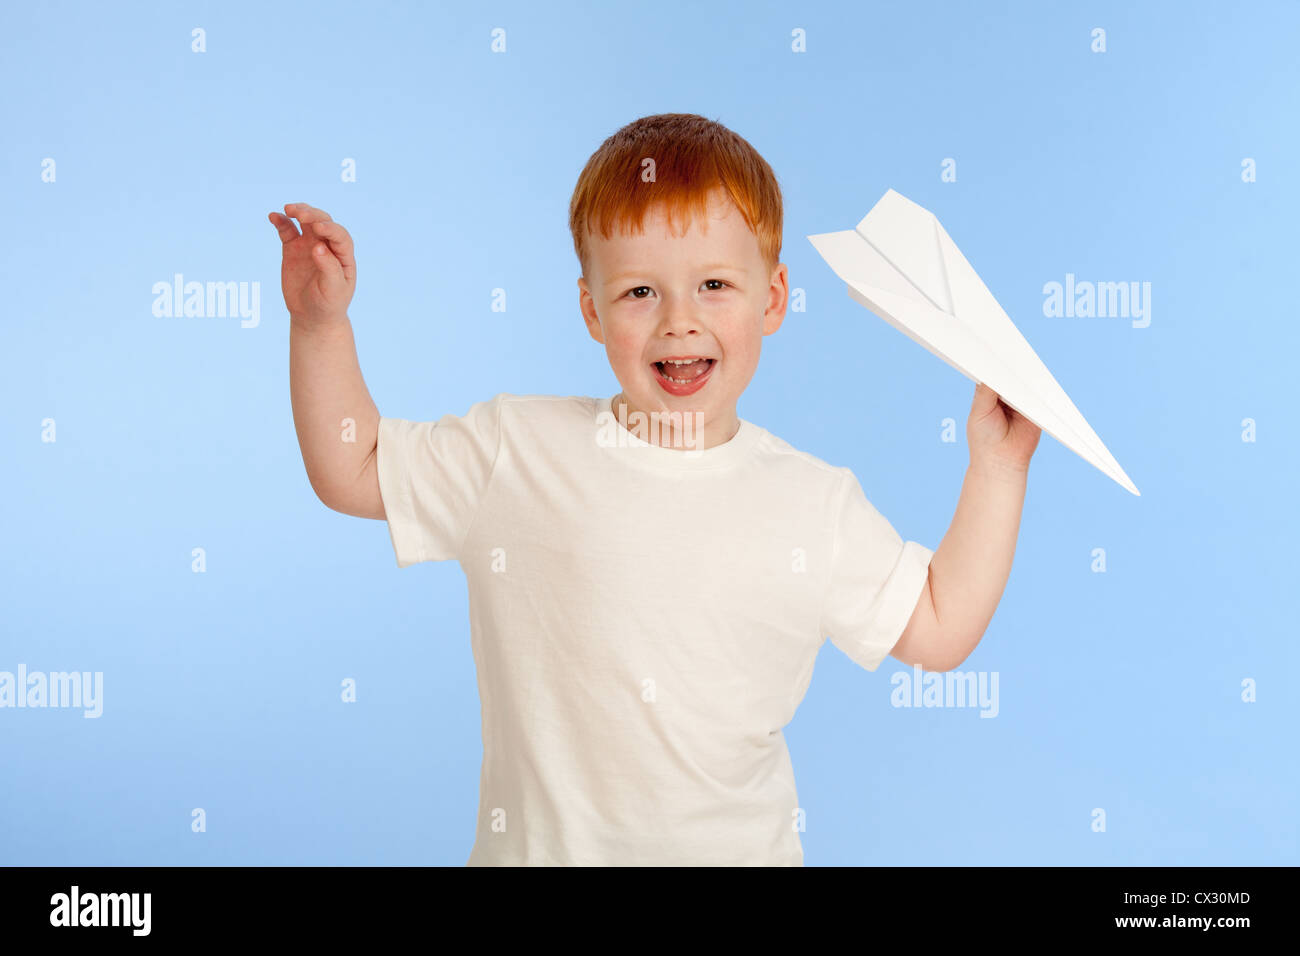 Bezaubernde rothaarige junge mit Papier Flugzeugmodell auf blauem Hintergrund im studio Stockfoto